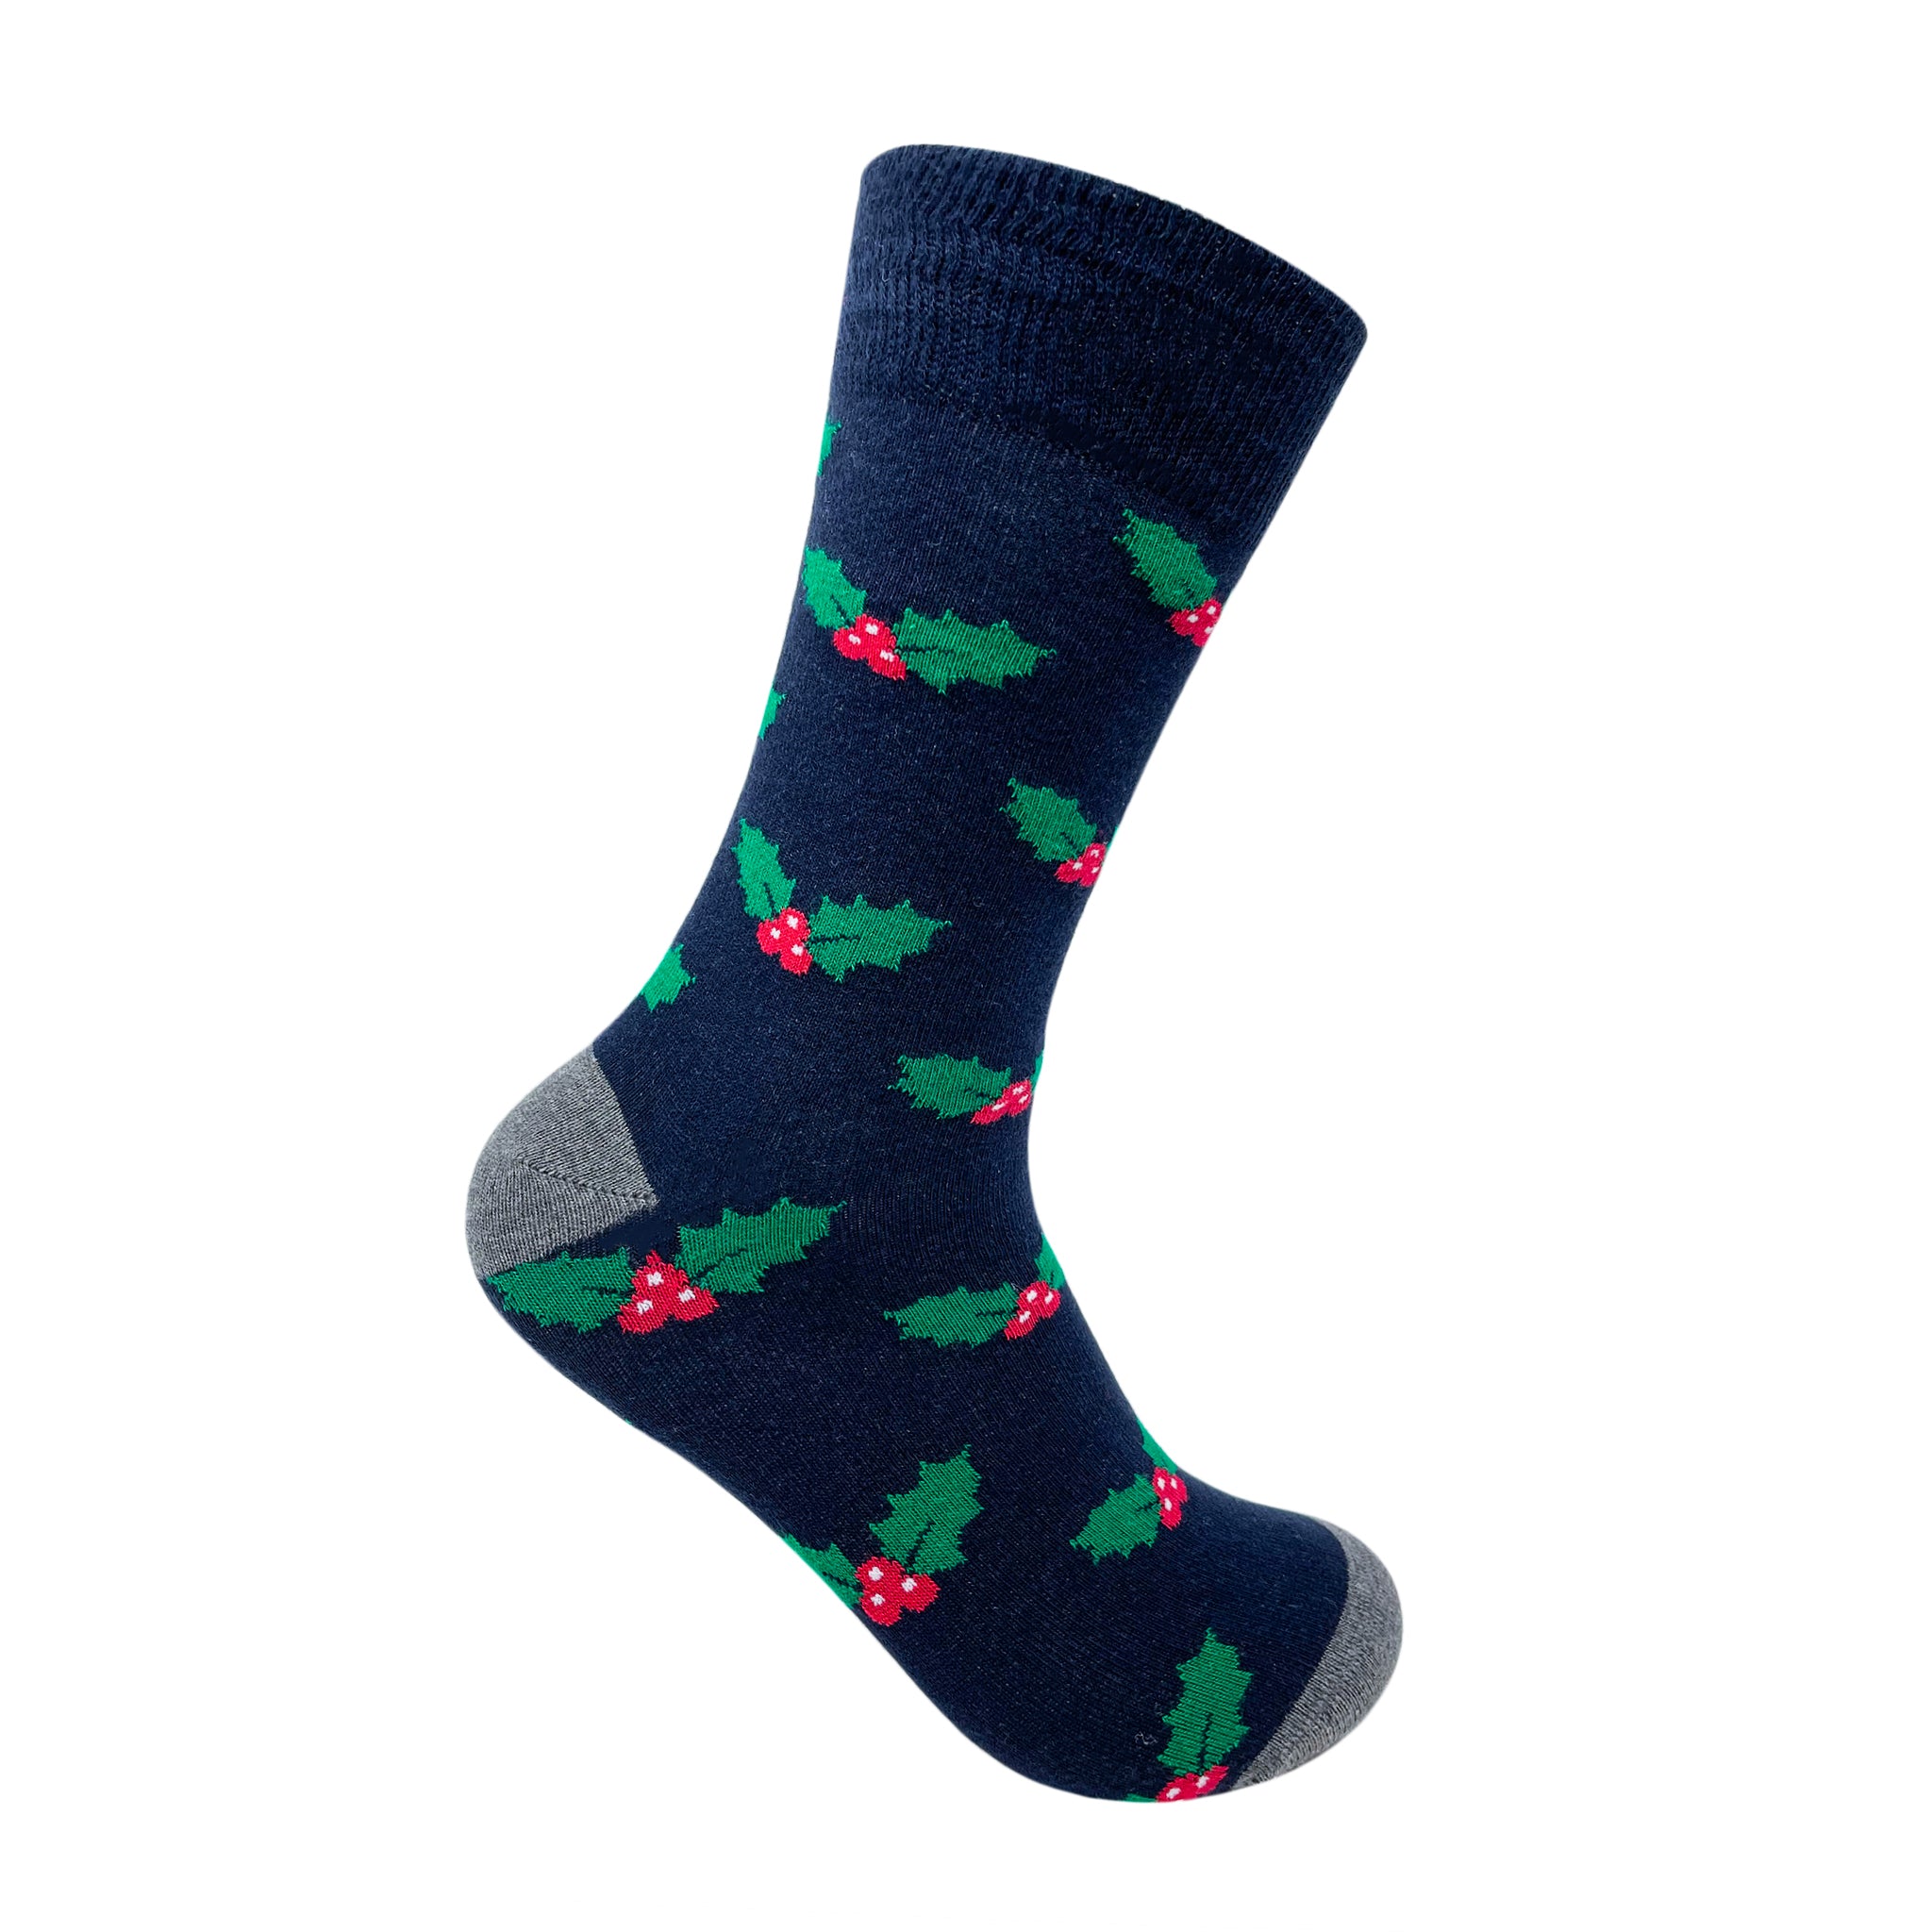 Under The Mistletoe Socks For Men